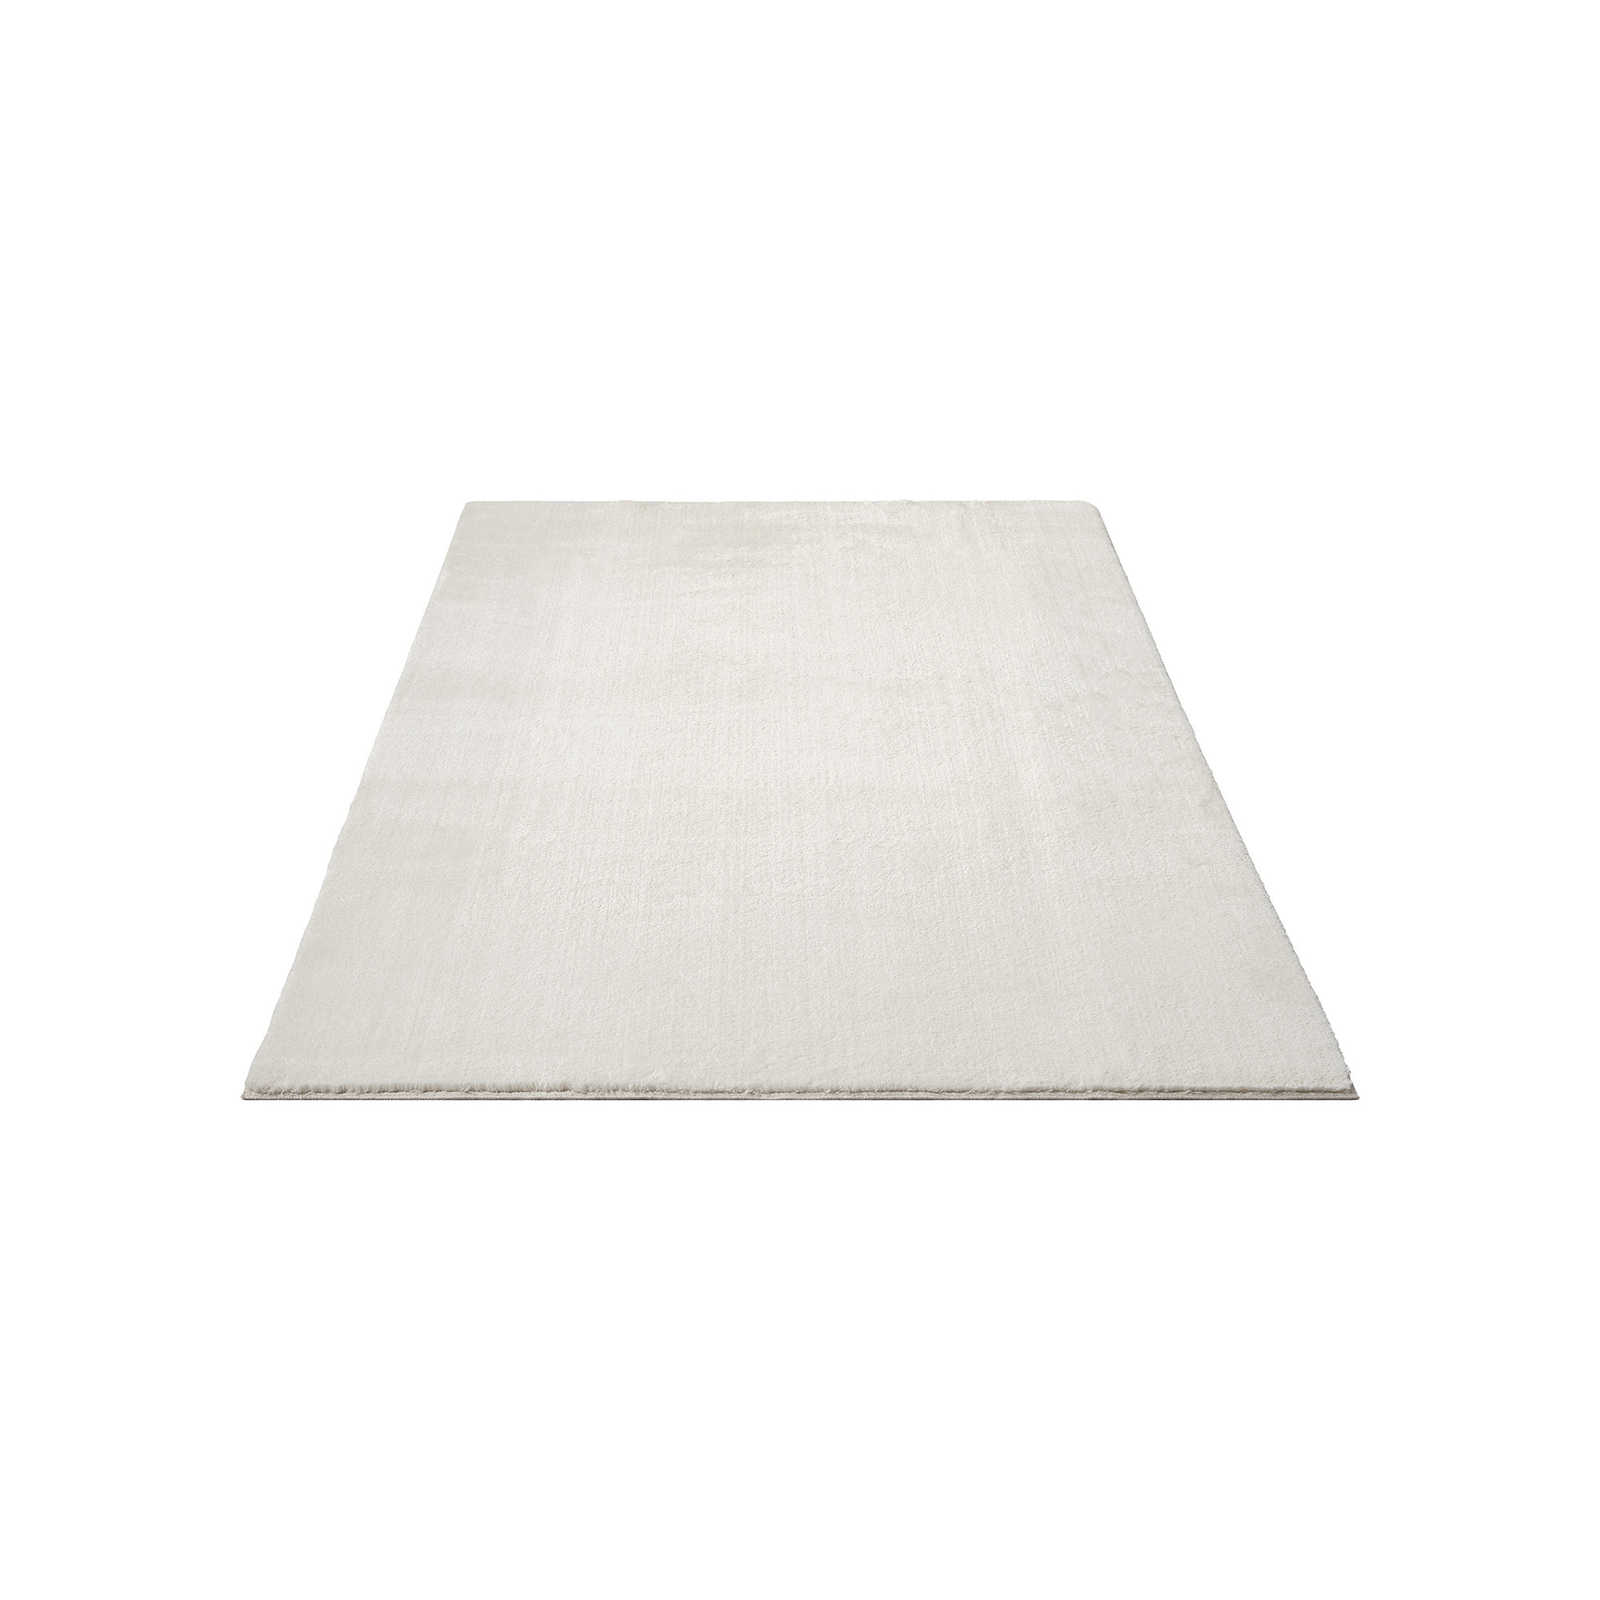 Fashionable high pile carpet in cream - 230 x 160 cm
